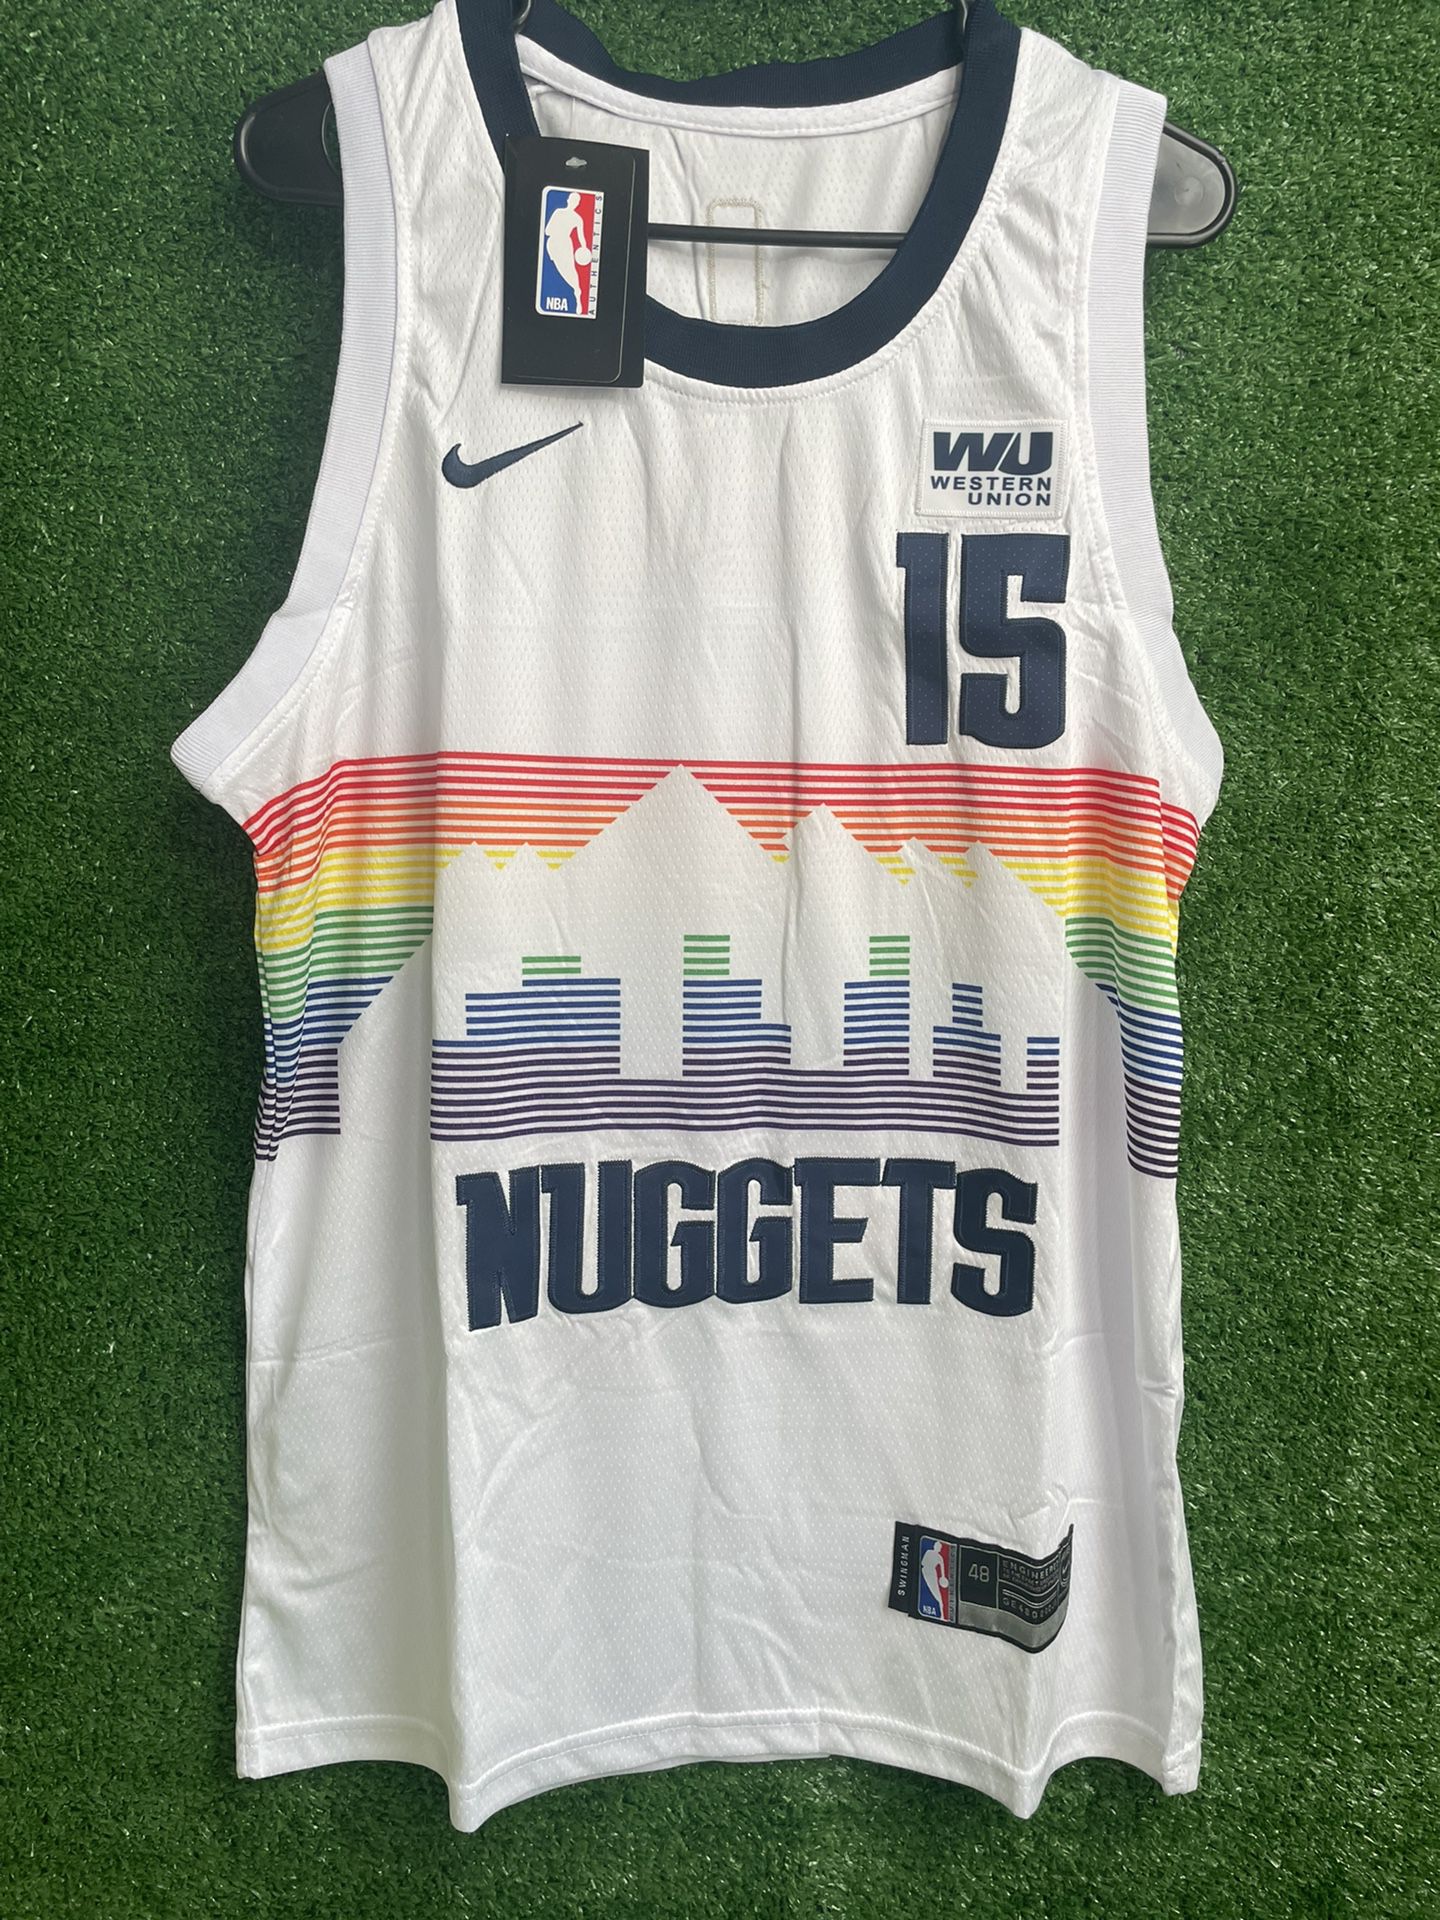 Denver Nuggets Jerseys for Sale in Denver, CO - OfferUp